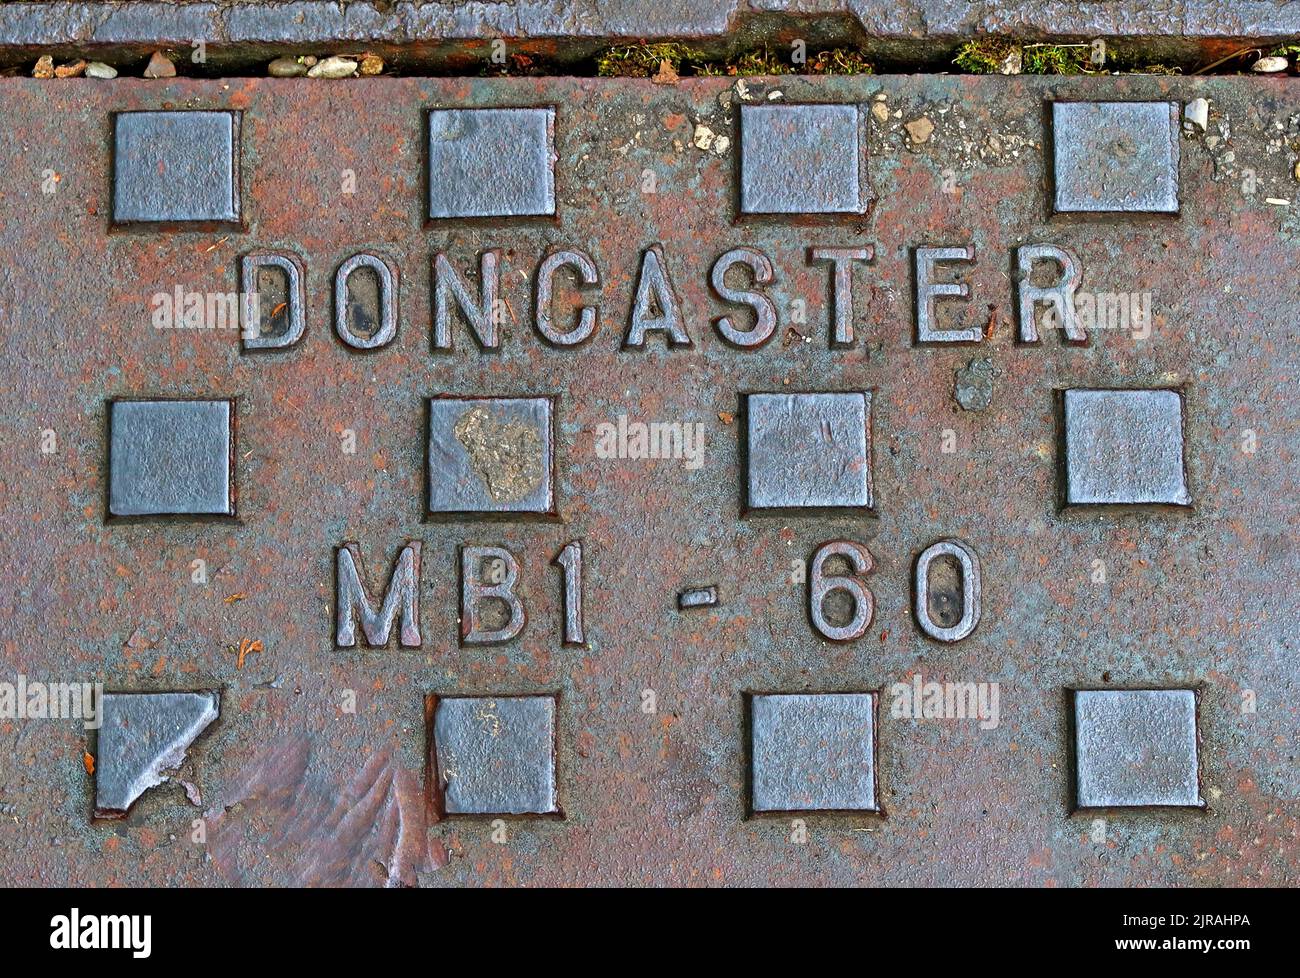 Doncaster, grille en fonte gaufrée, Yorkshire, Angleterre, Royaume-Uni, DN1 1AB Banque D'Images